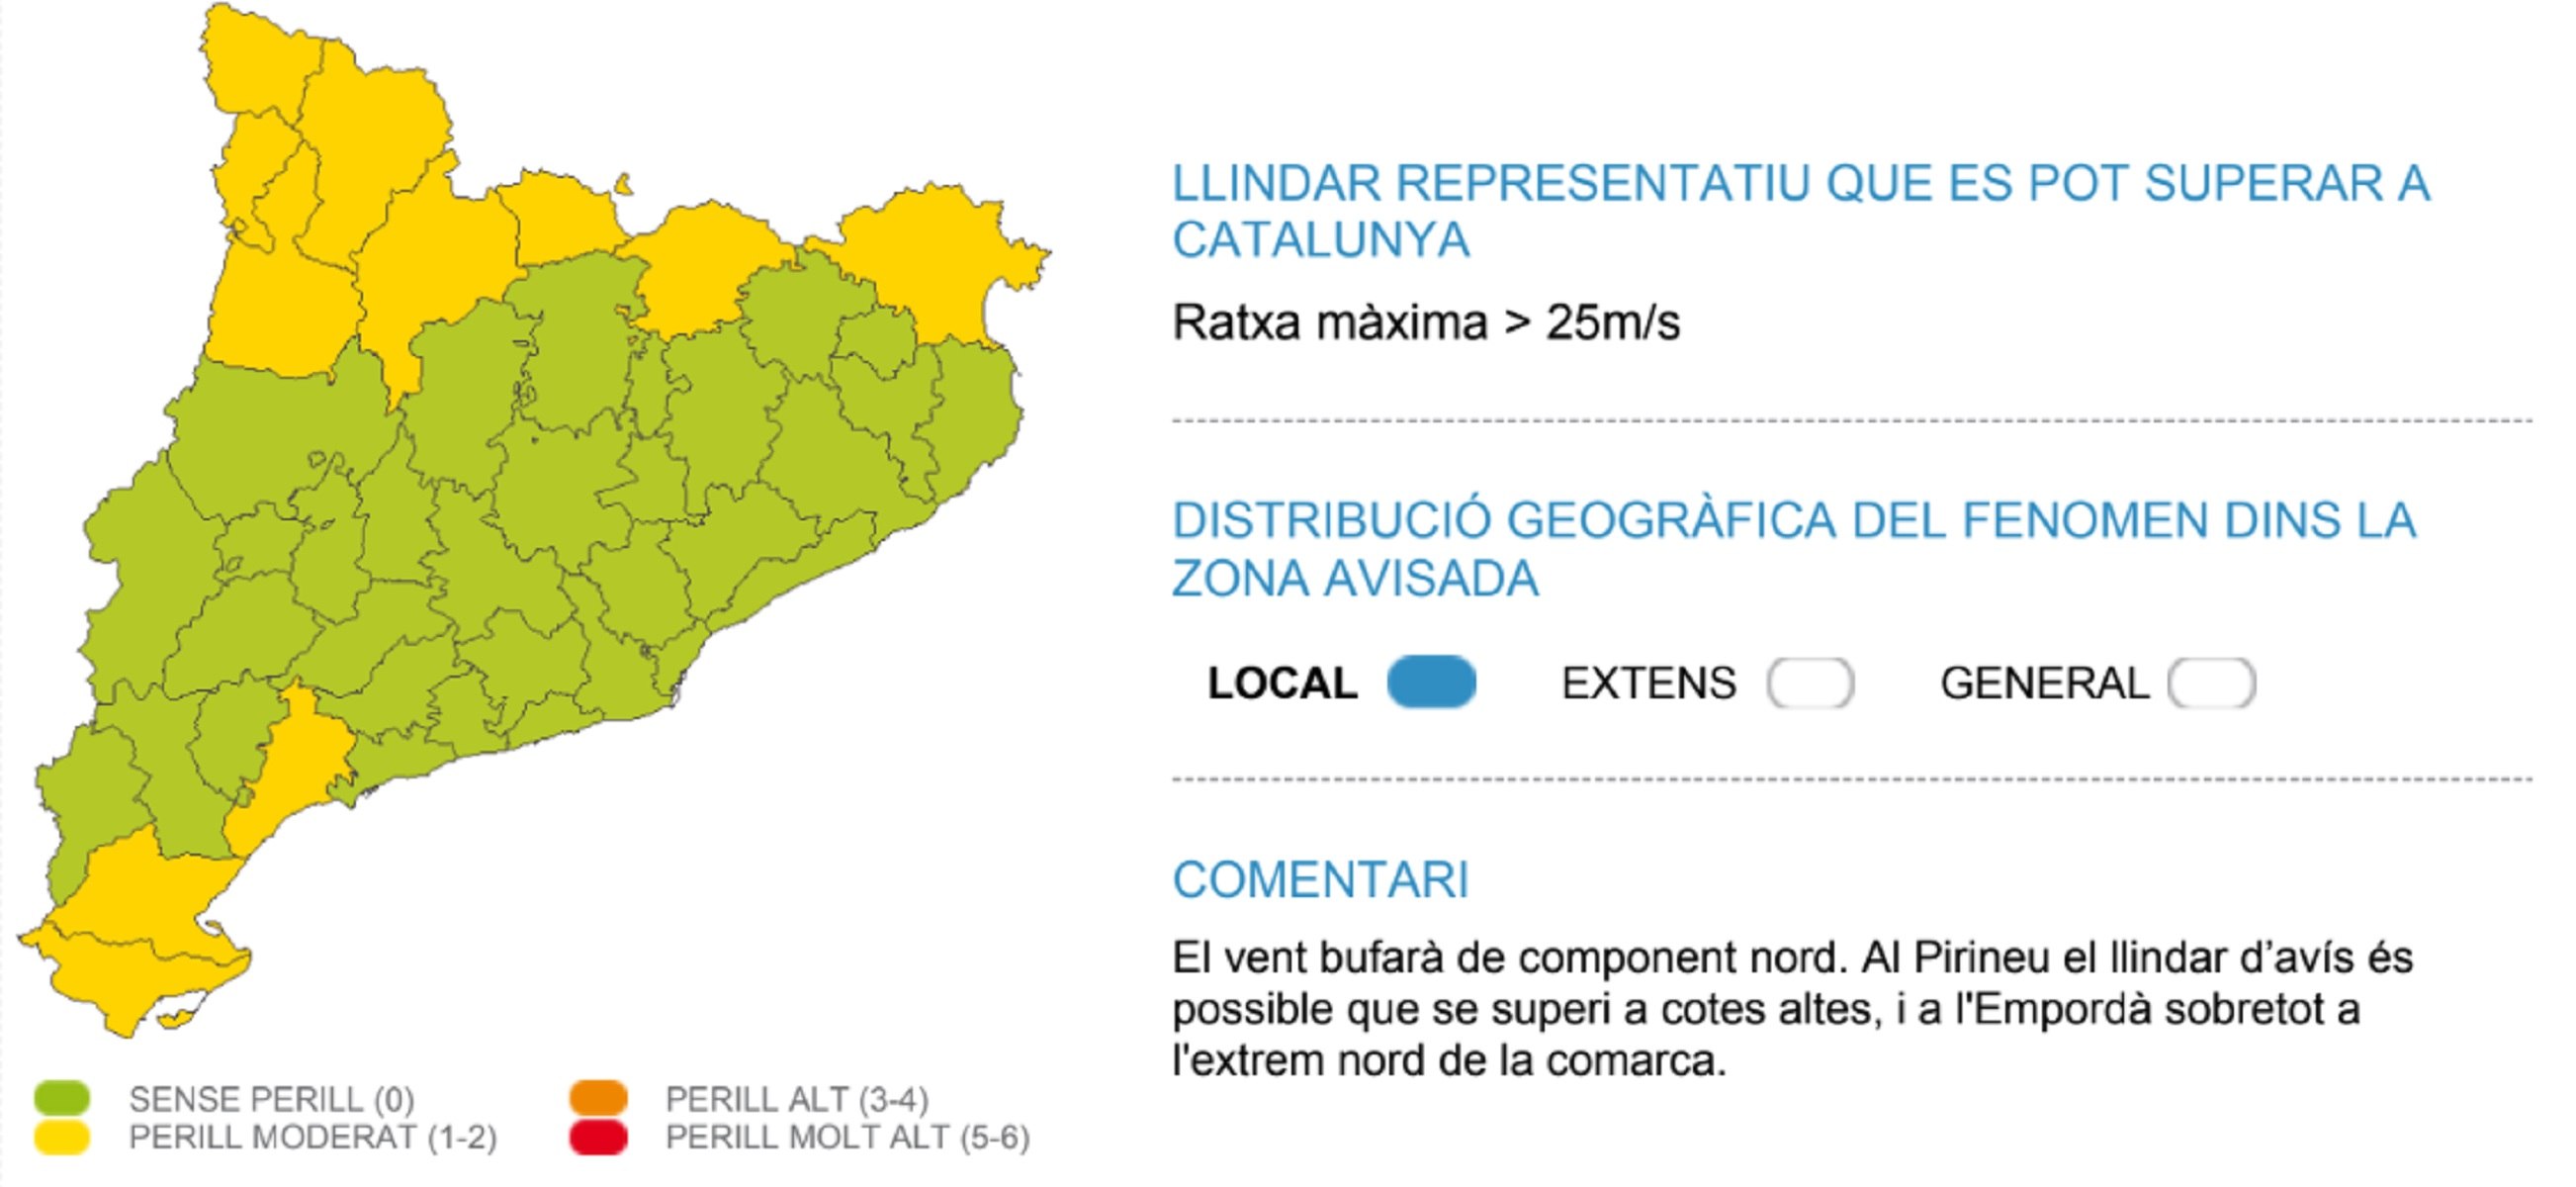 Alerta per fortes ventades Catalunya dimecres, 20 de desembre Meteocat